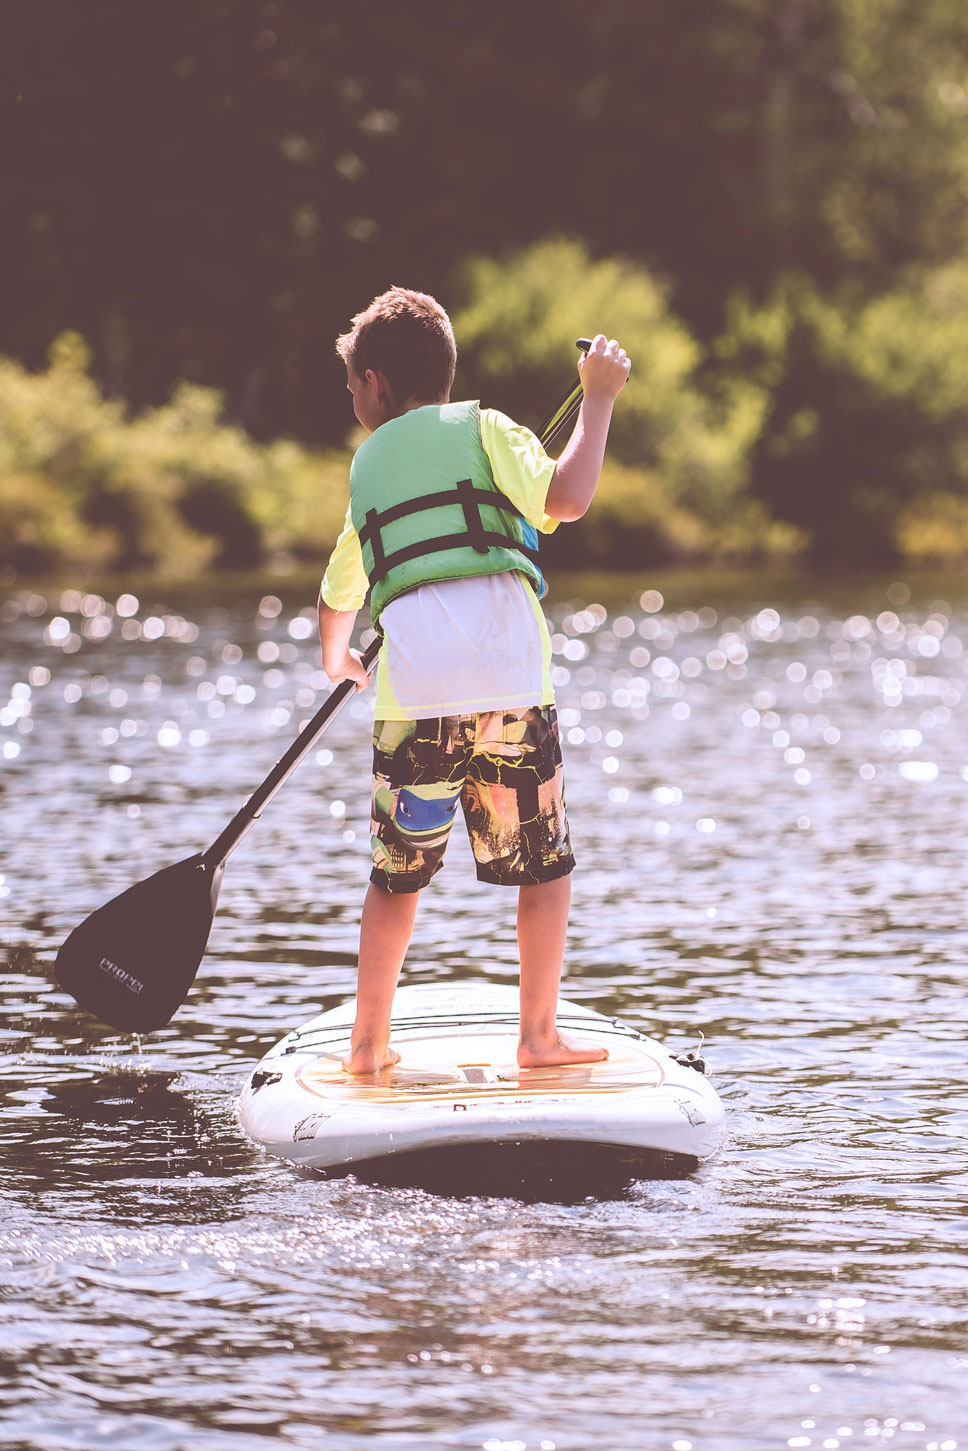 Kind auf einem Paddleboard. Ein Klick auf das Bild öffnet eine Auswahl an Veranstaltungen mit viel Bewegung.